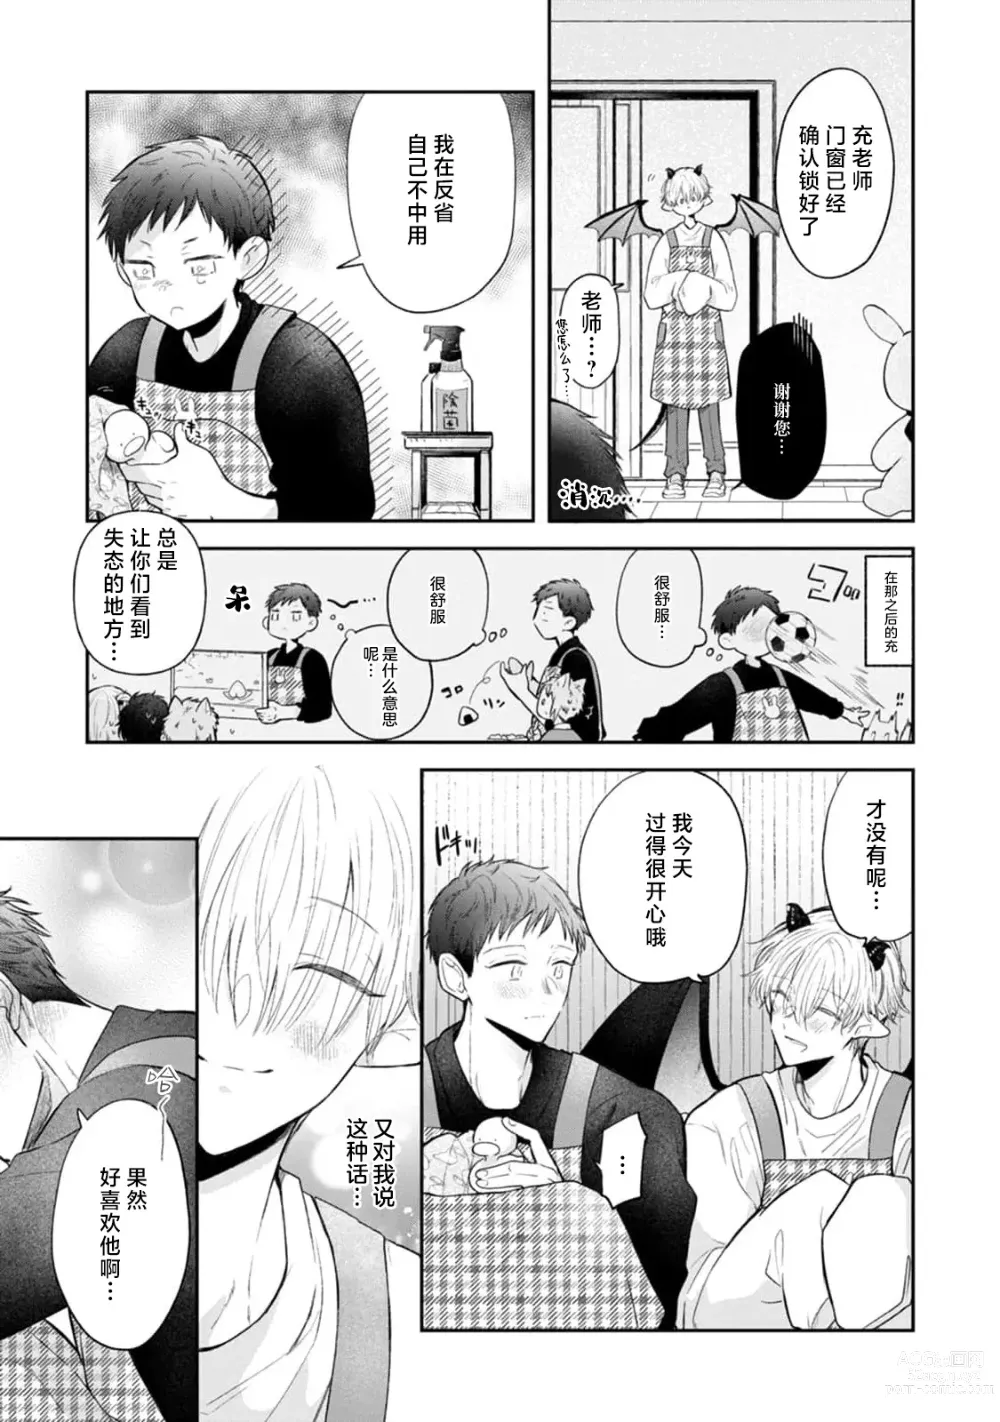 Page 21 of manga 叶羽老师全部是第一次 1-4